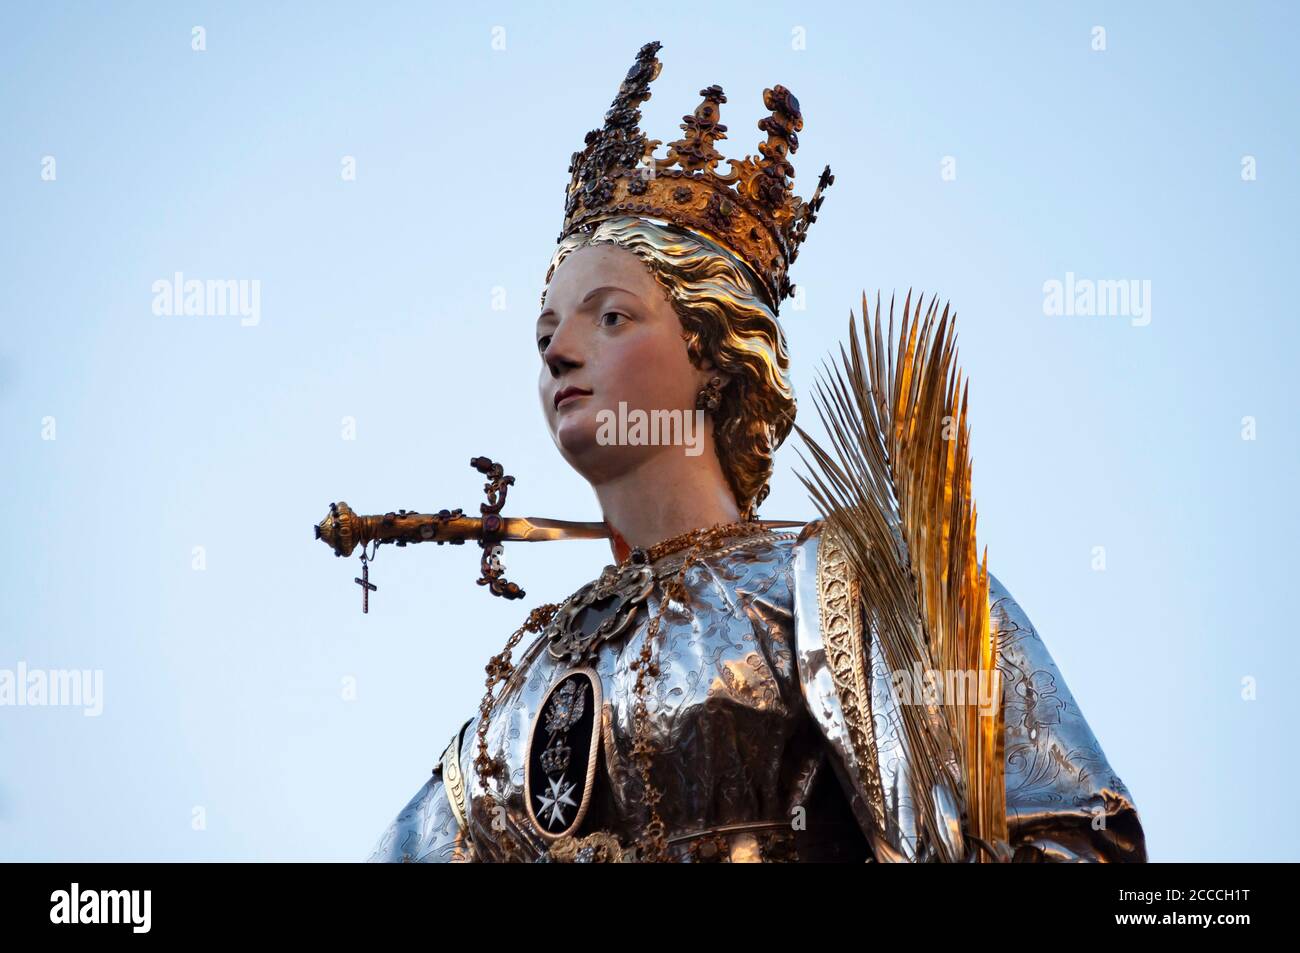 Das Simulacrum der Heiligen Lucia während der Prozession, einem religiösen Fest der katholischen Kirche, das jedes Jahr am 13. Dezember in Syrakus stattfindet. S Stockfoto